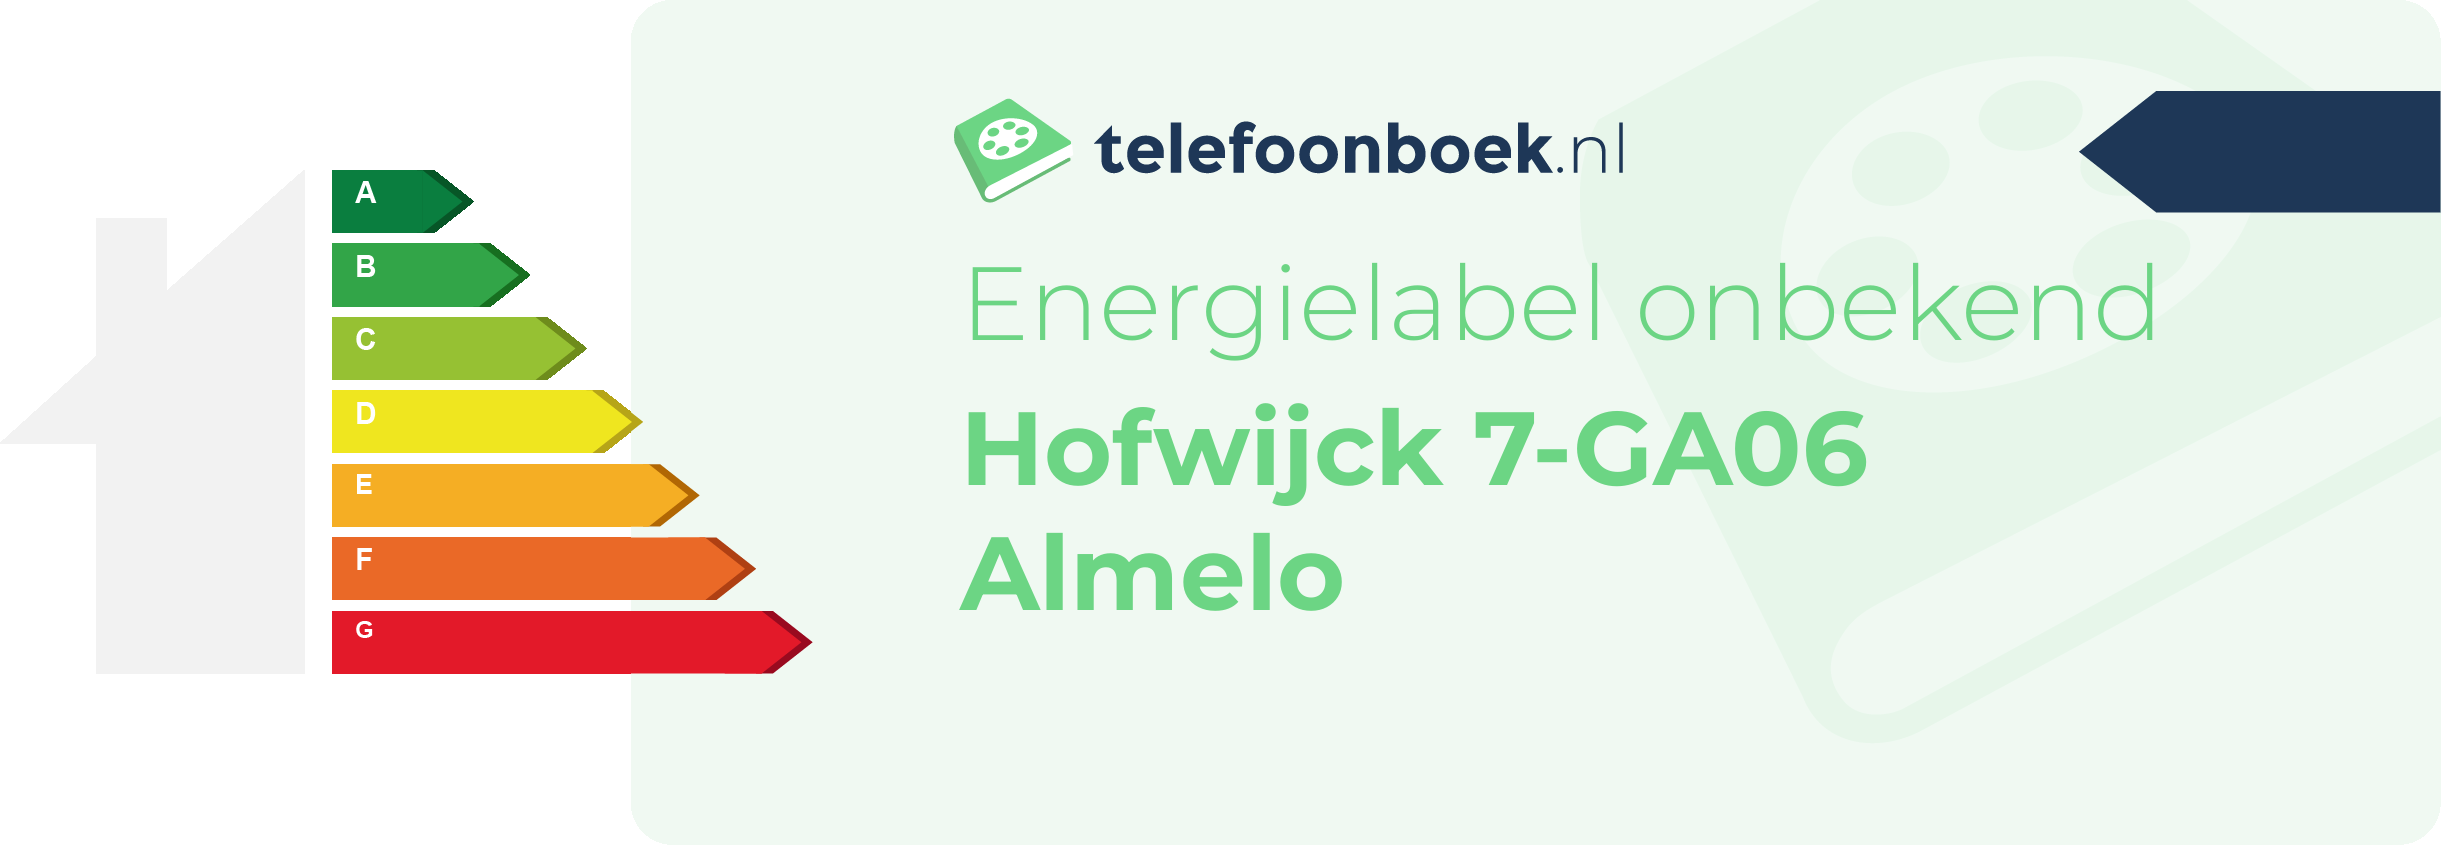 Energielabel Hofwijck 7-GA06 Almelo